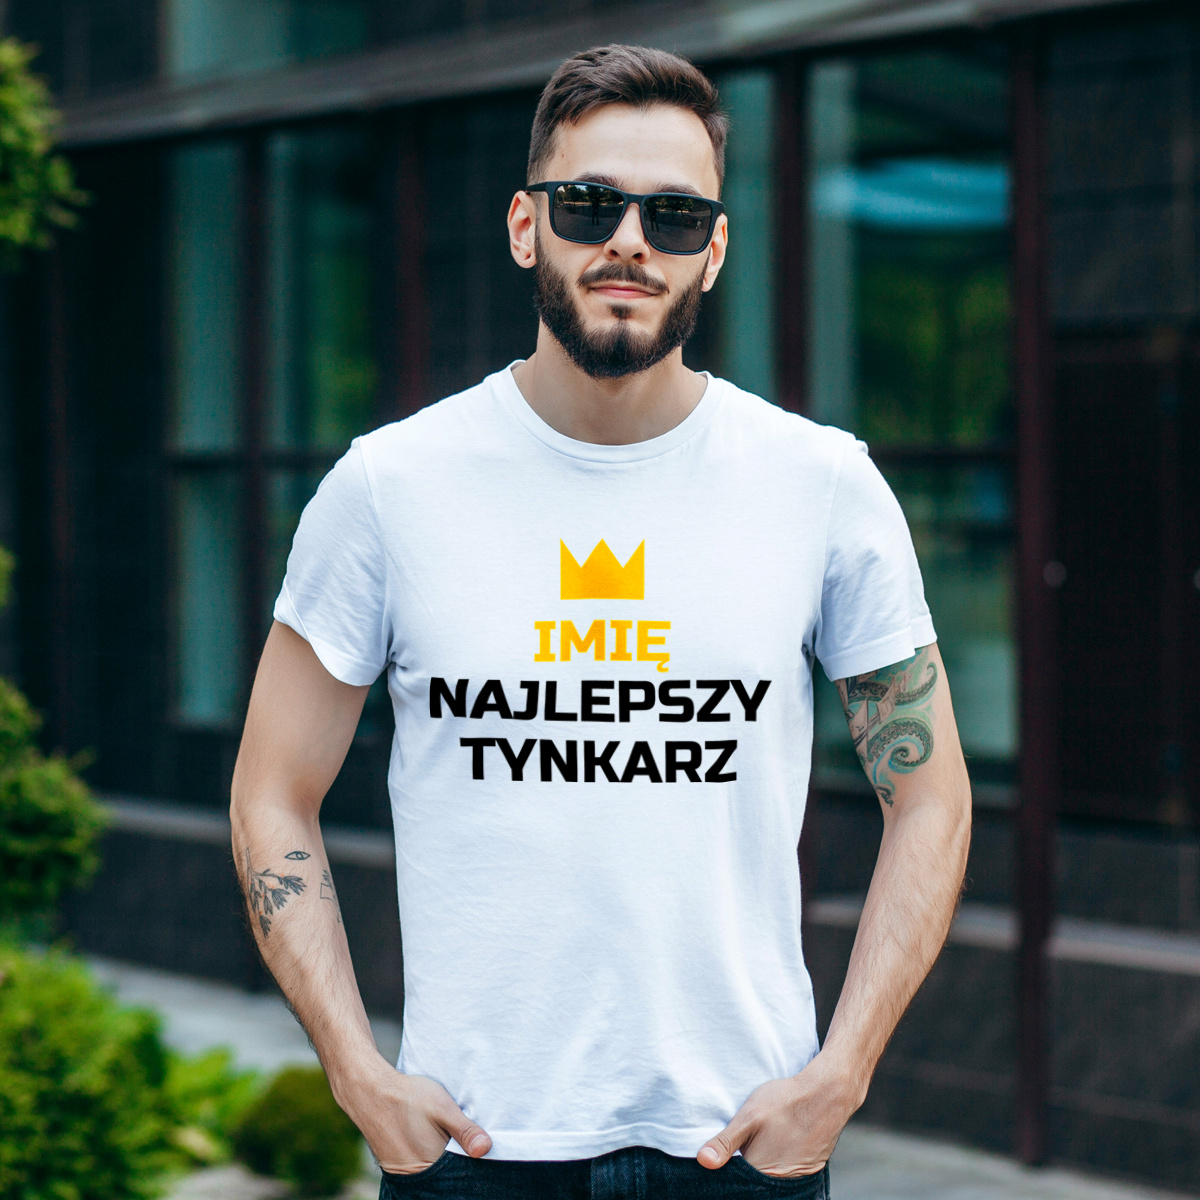 Twoje Imię Najlepszy Tynkarz - Męska Koszulka Biała